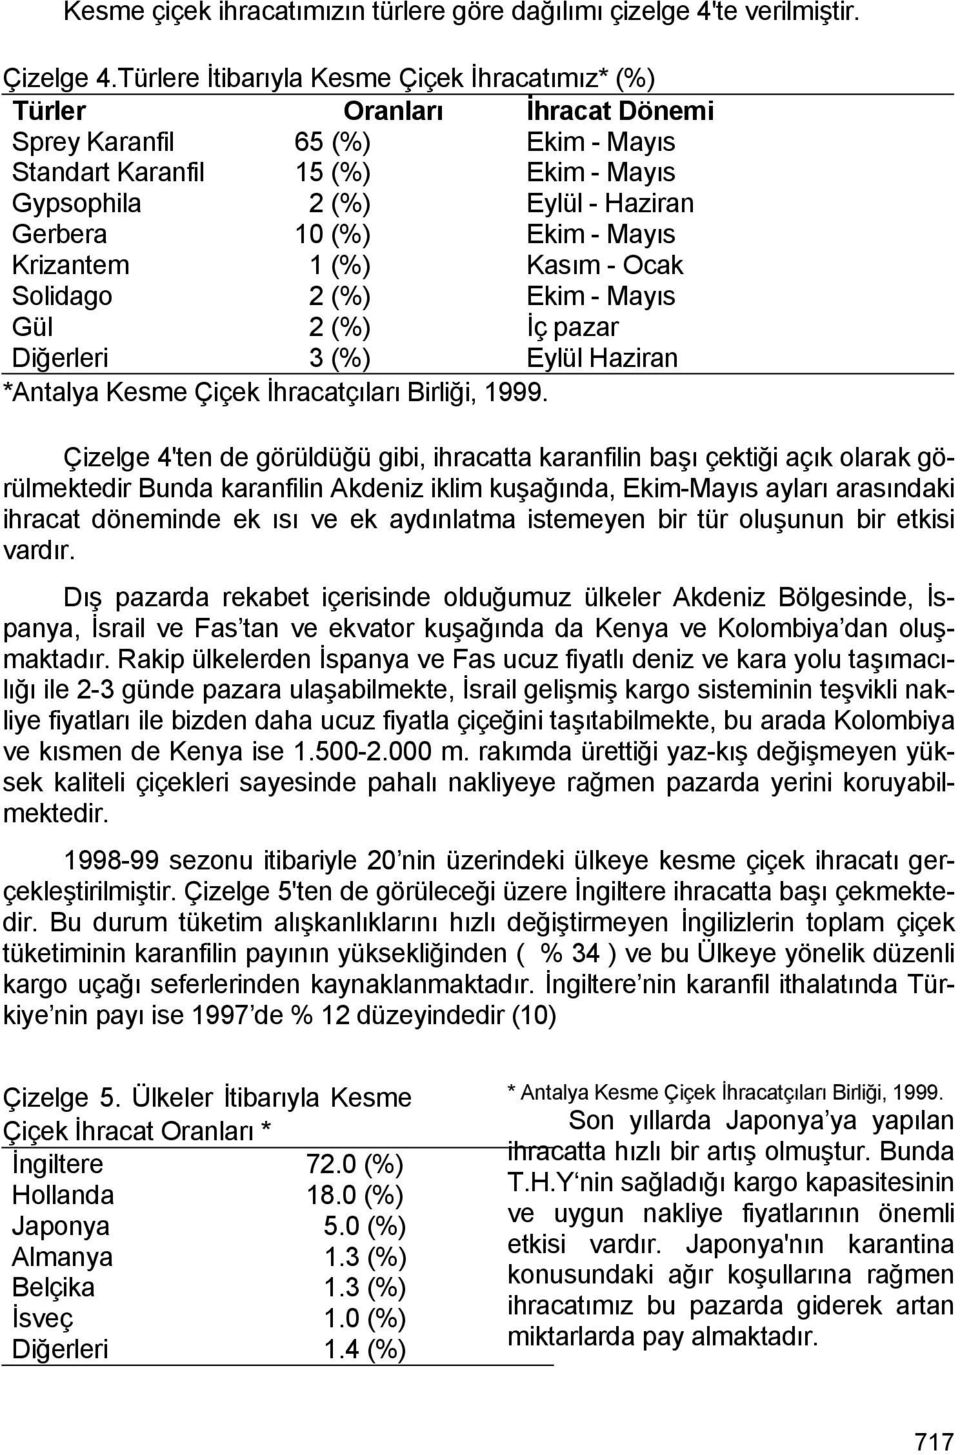 Ekim - Mayıs Krizantem 1 (%) Kasım - Ocak Solidago 2 (%) Ekim - Mayıs Gül 2 (%) İç pazar Diğerleri 3 (%) Eylül Haziran *Antalya Kesme Çiçek İhracatçıları Birliği, 1999.